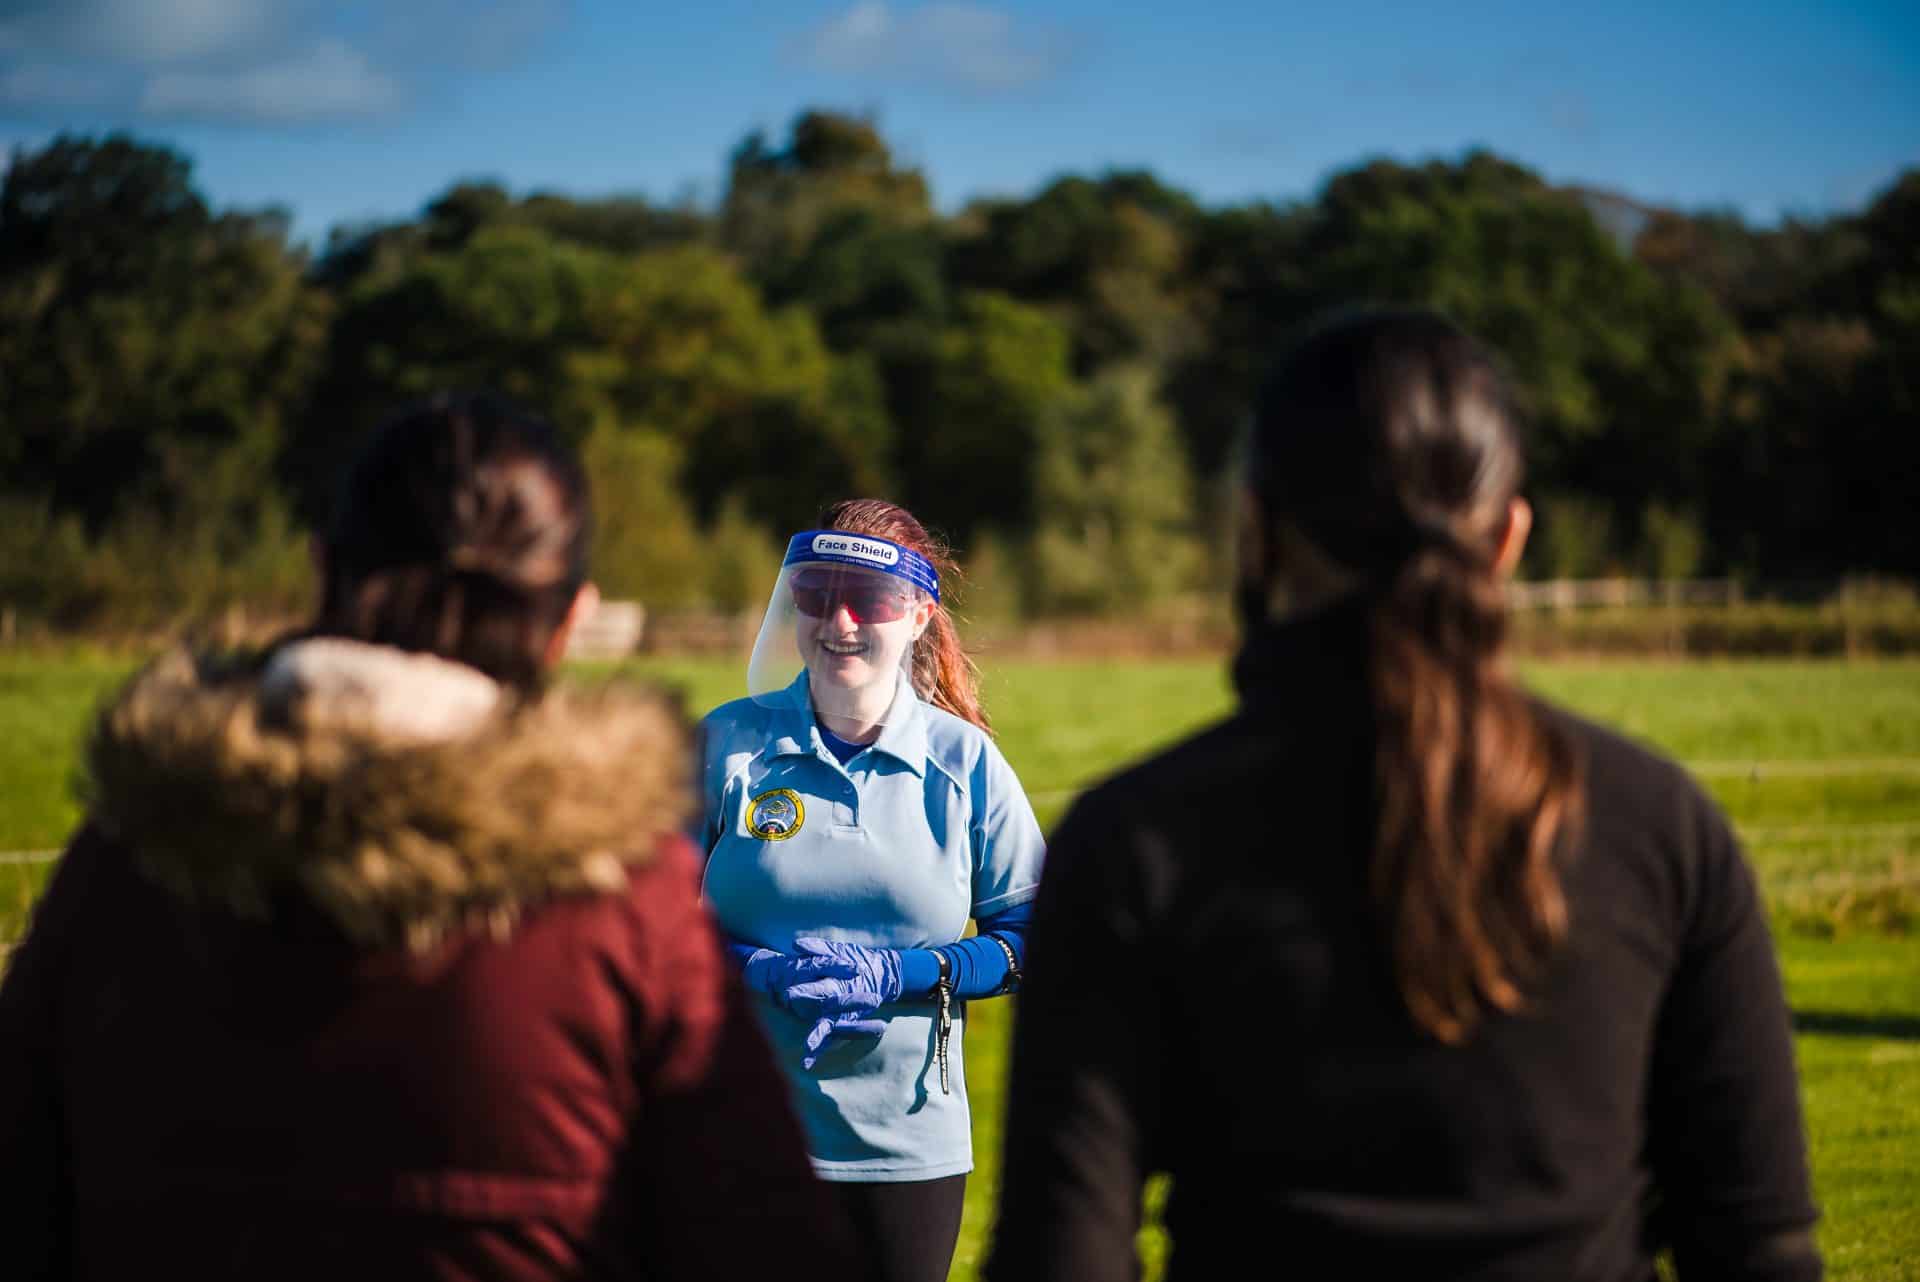 Womens sporting journeys  insight from new report revealed